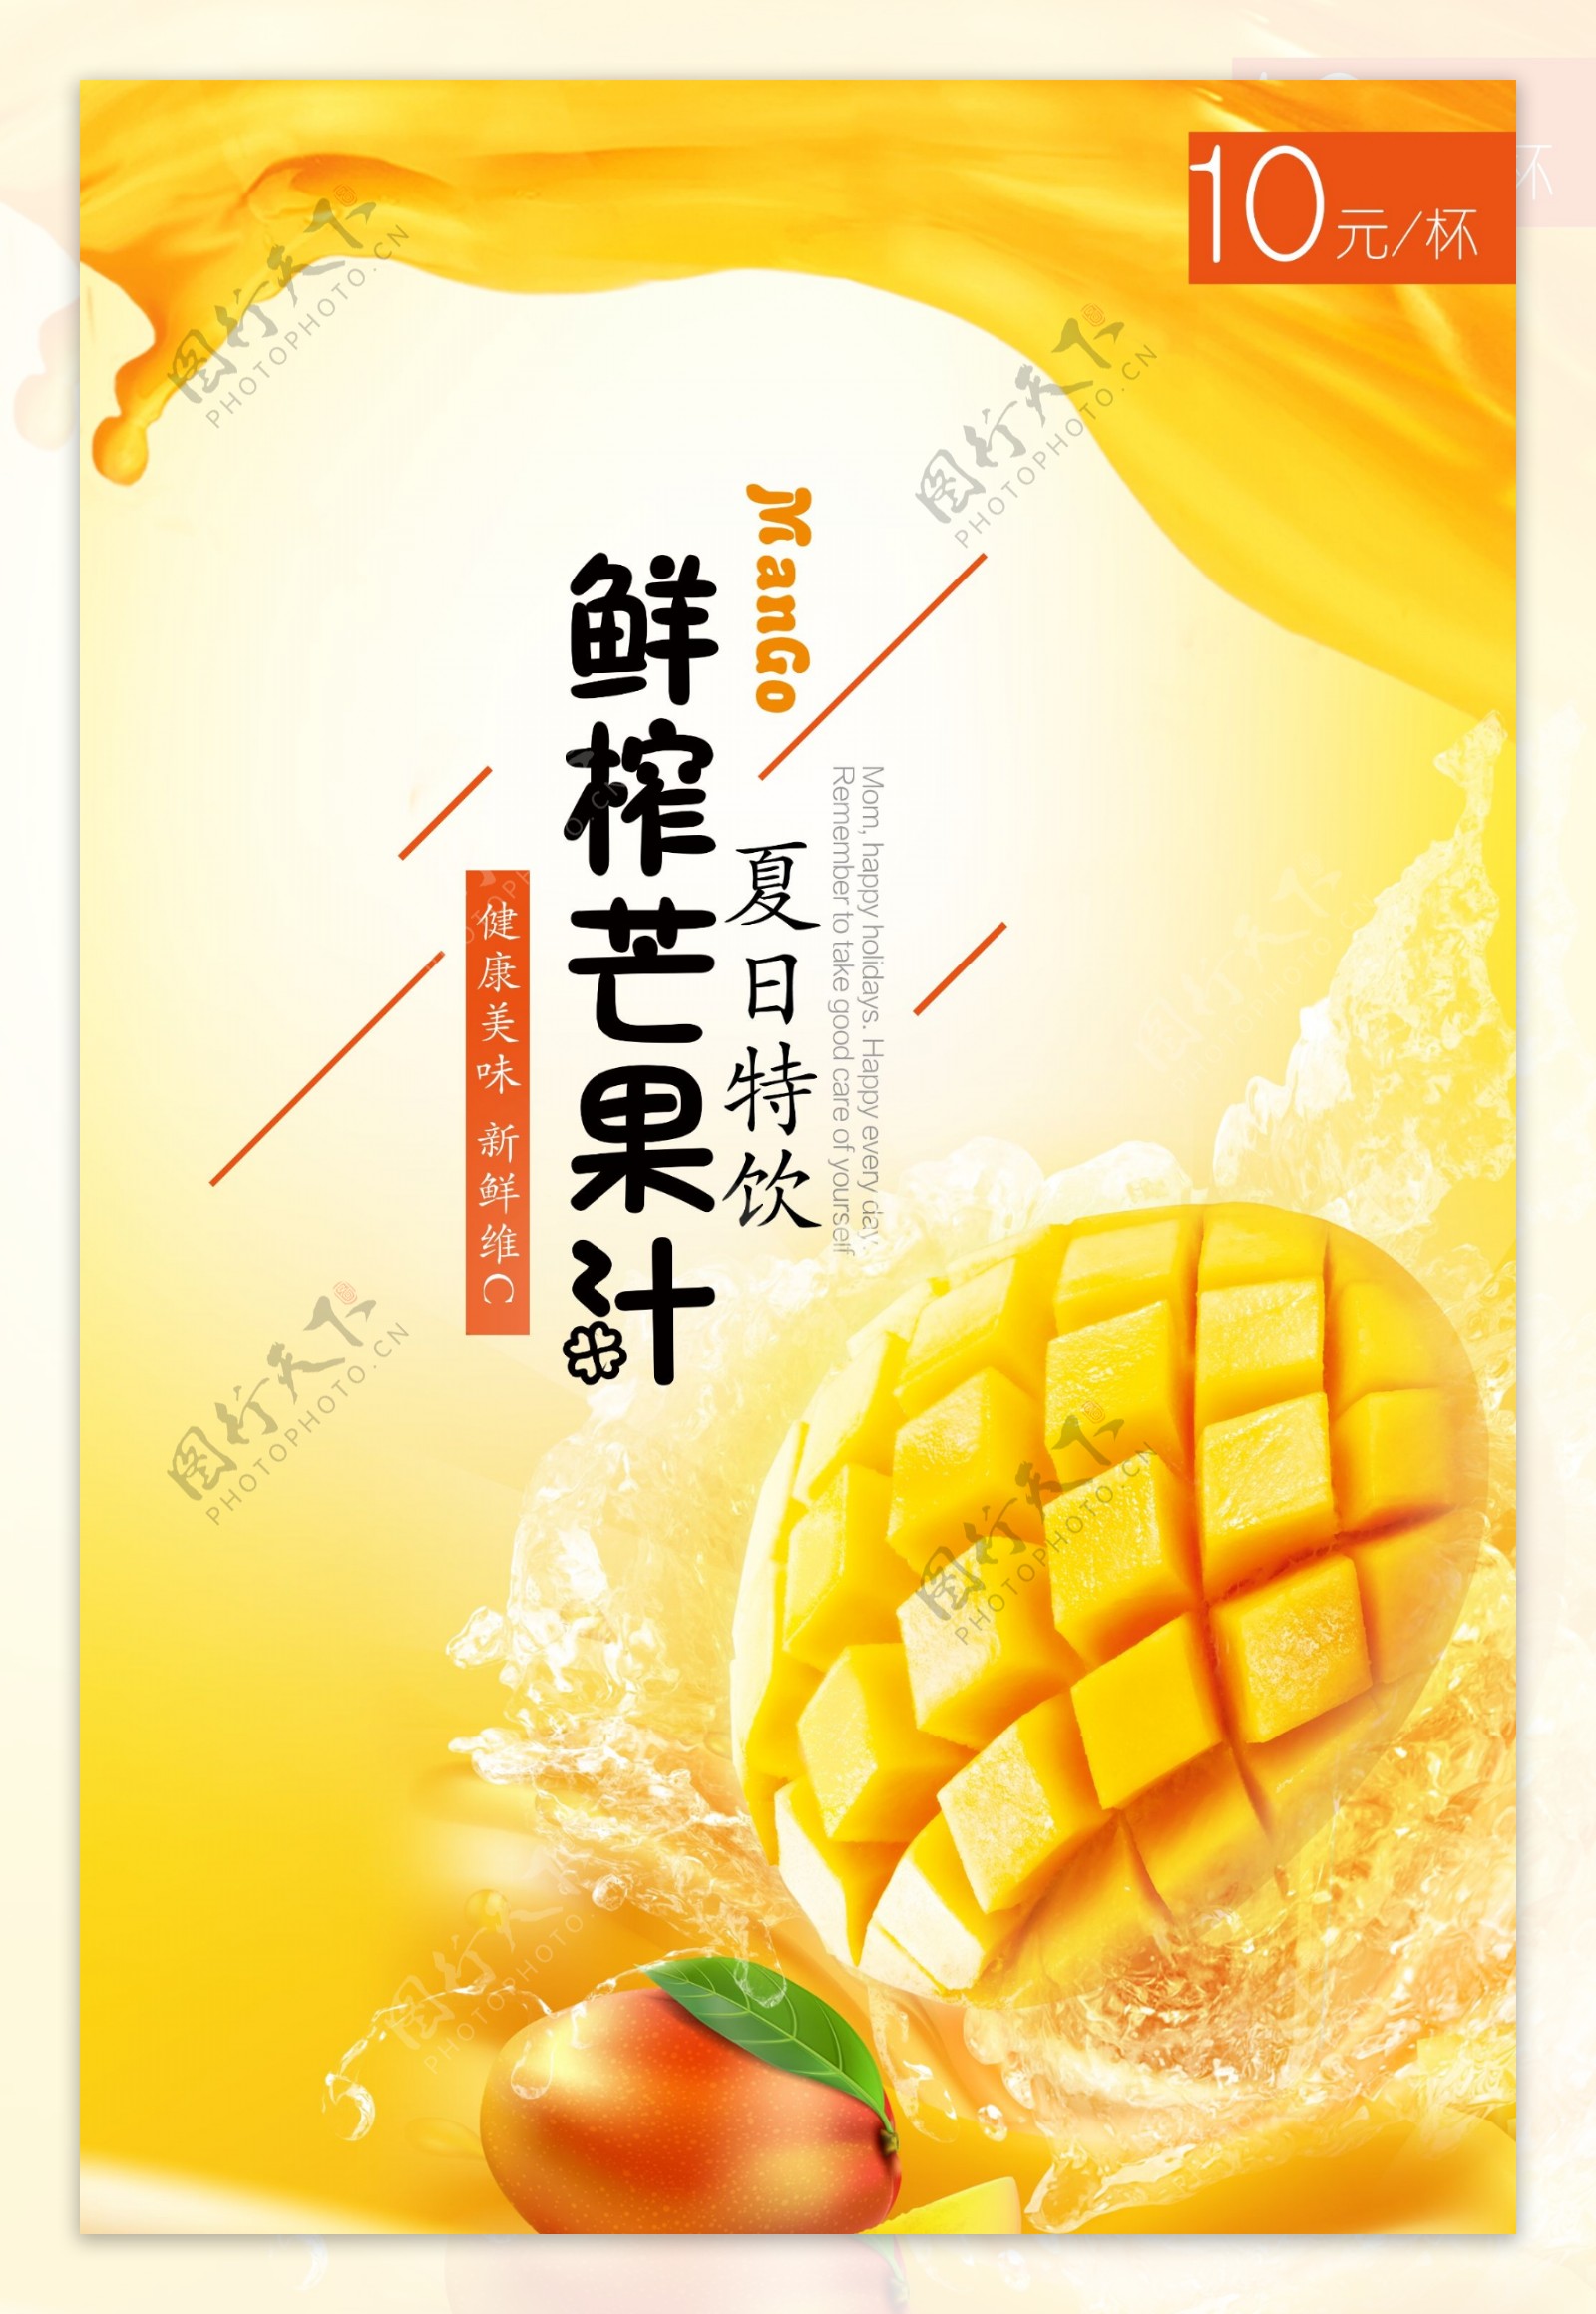 夏日芒果汁广告图片